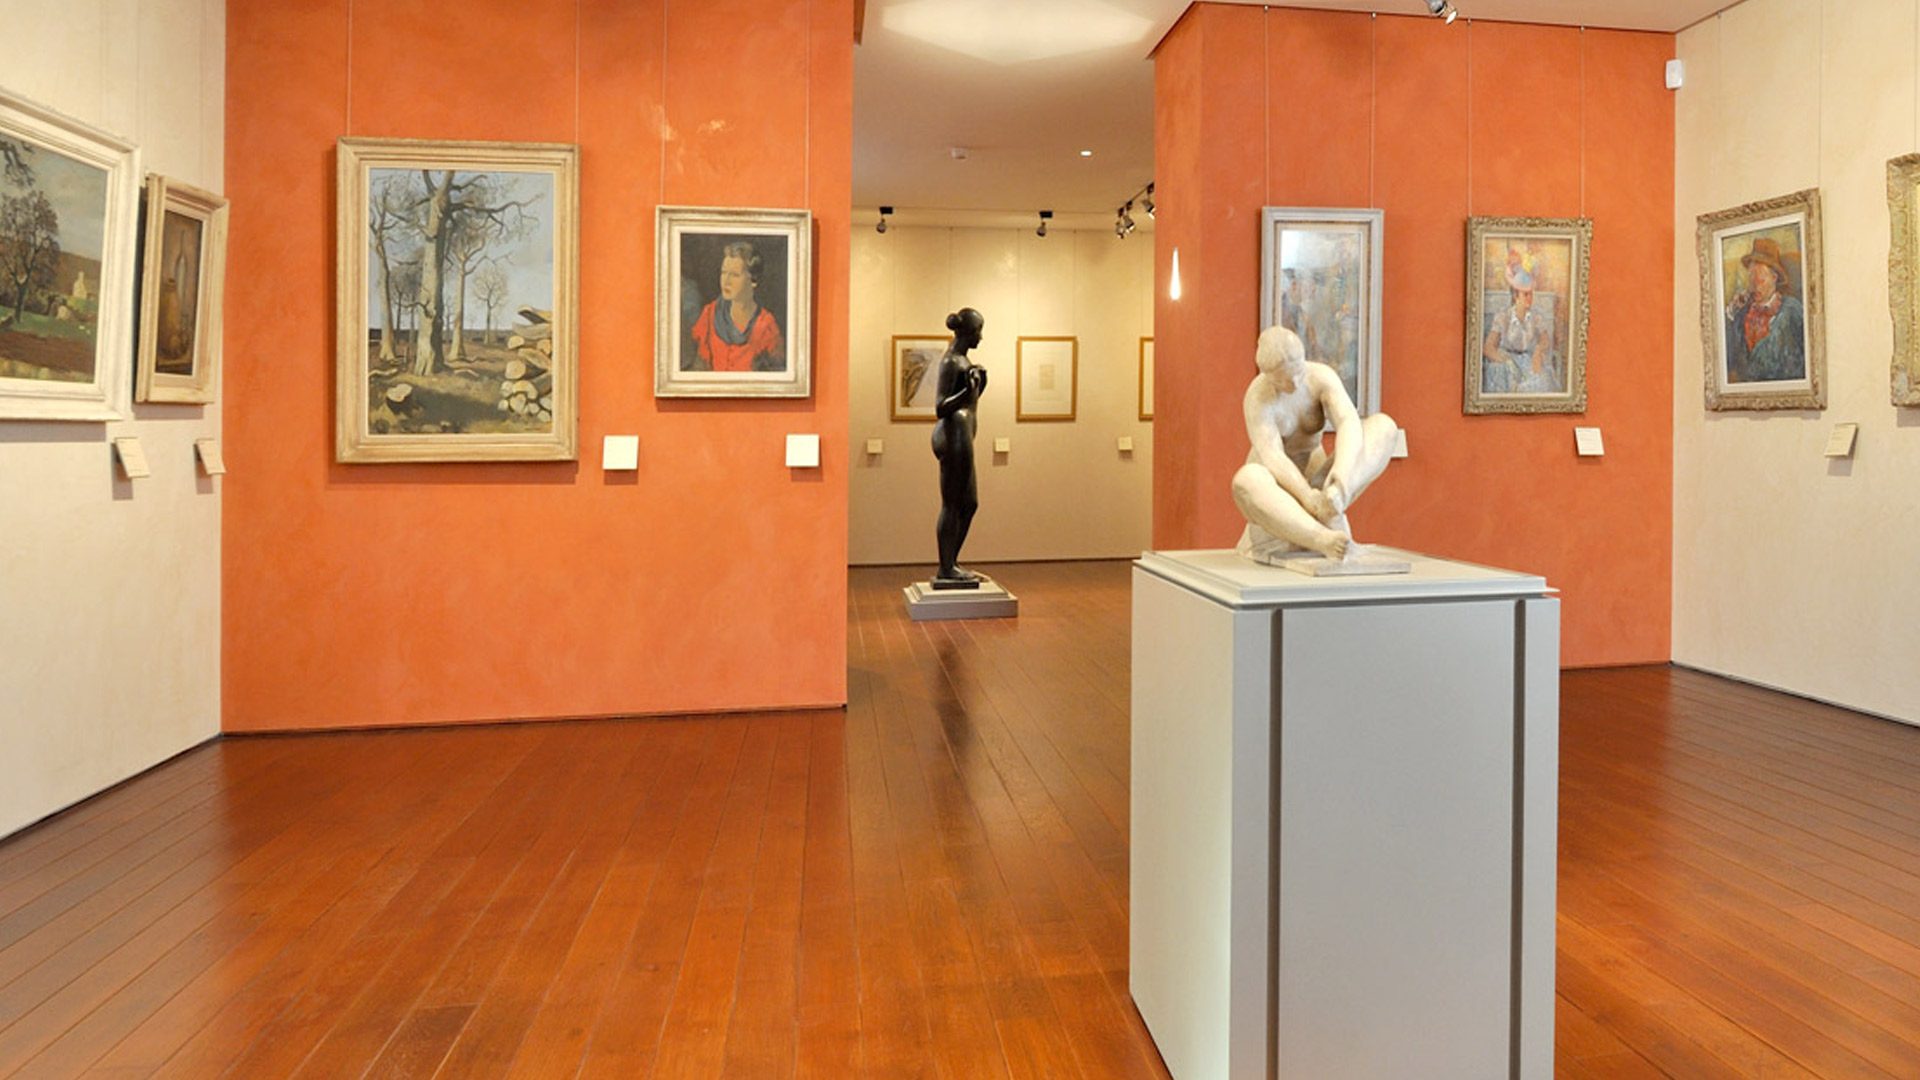 Albi el museo Toulouse-Lautrec y sus galerías de arte moderno: los contemporáneos de Toulouse-Lautrec